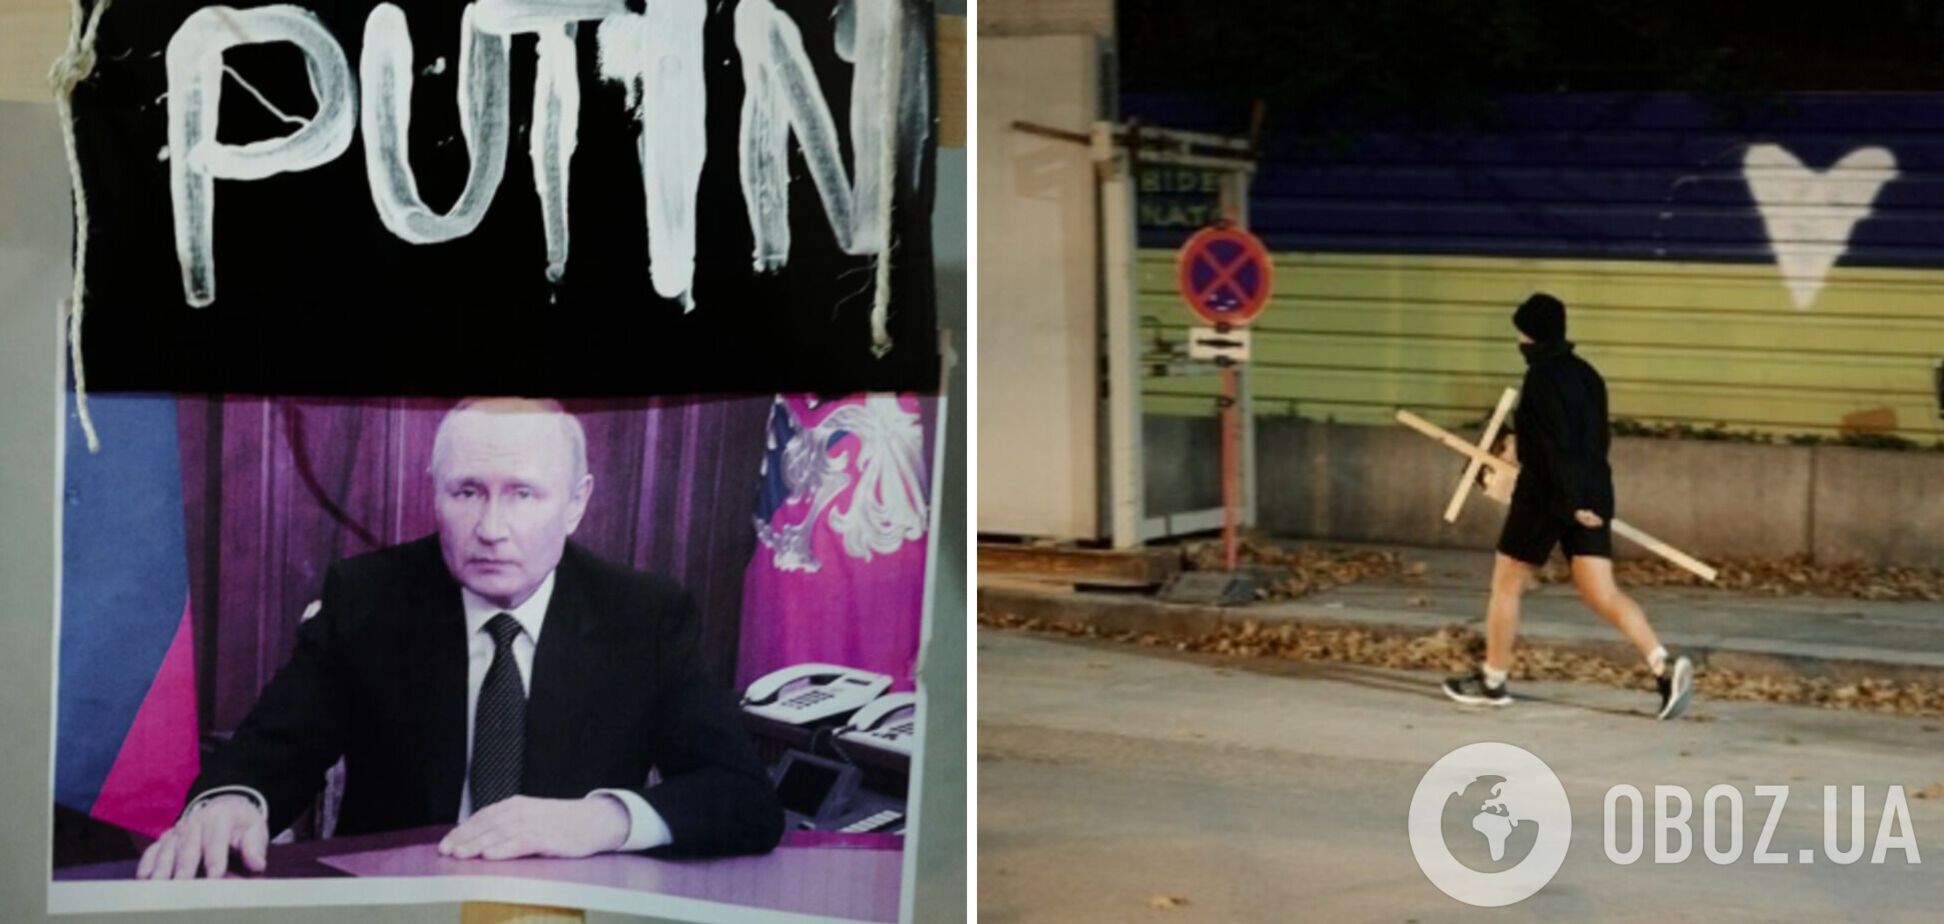 В Вене к посольству РФ принесли надгробный крест Путину. Фото и видео